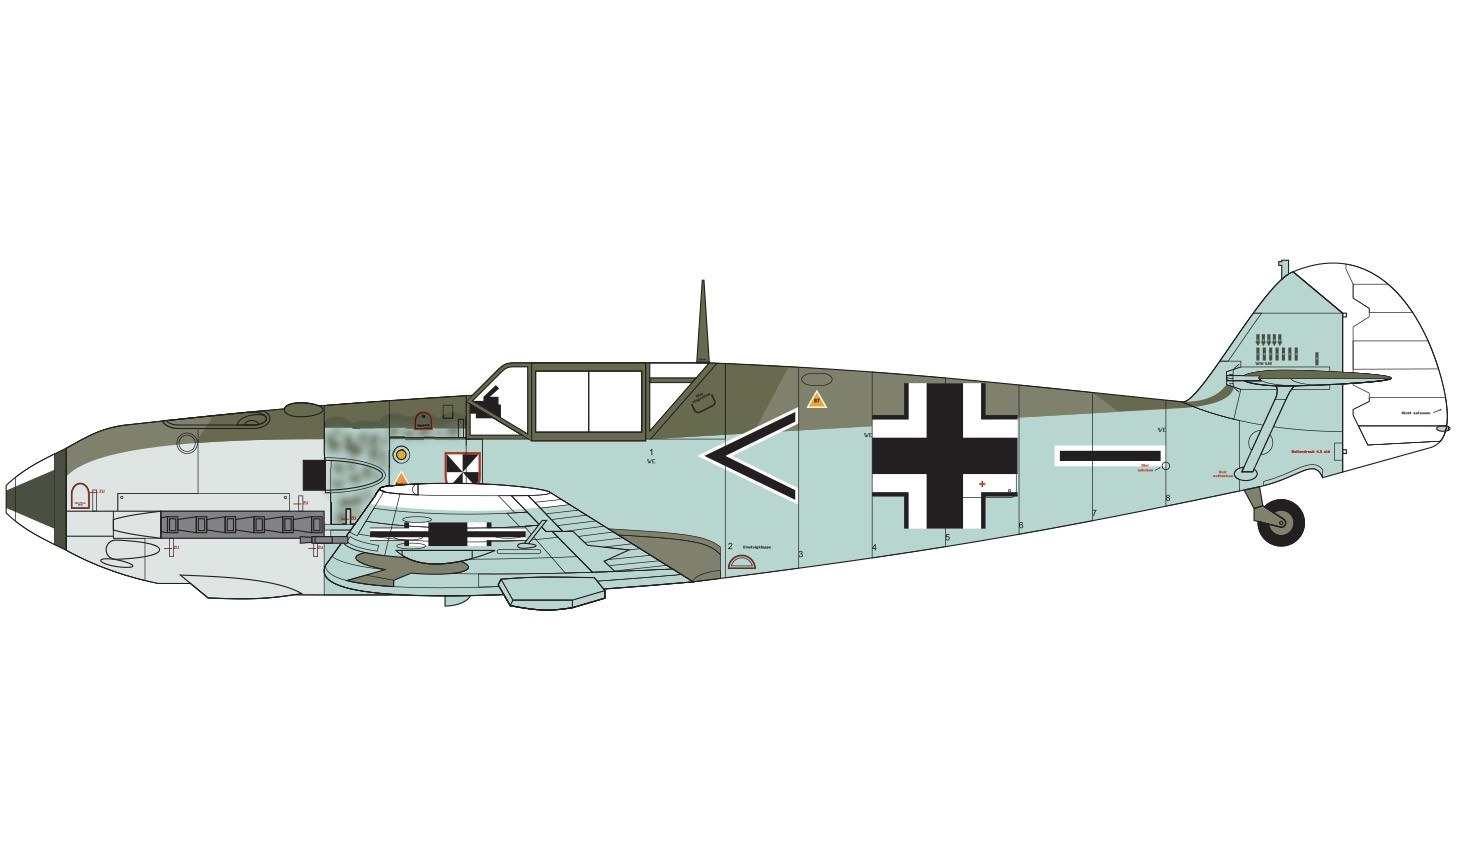 Airfix A05120B MESSERSCHMITT Bf109E-3/E-4